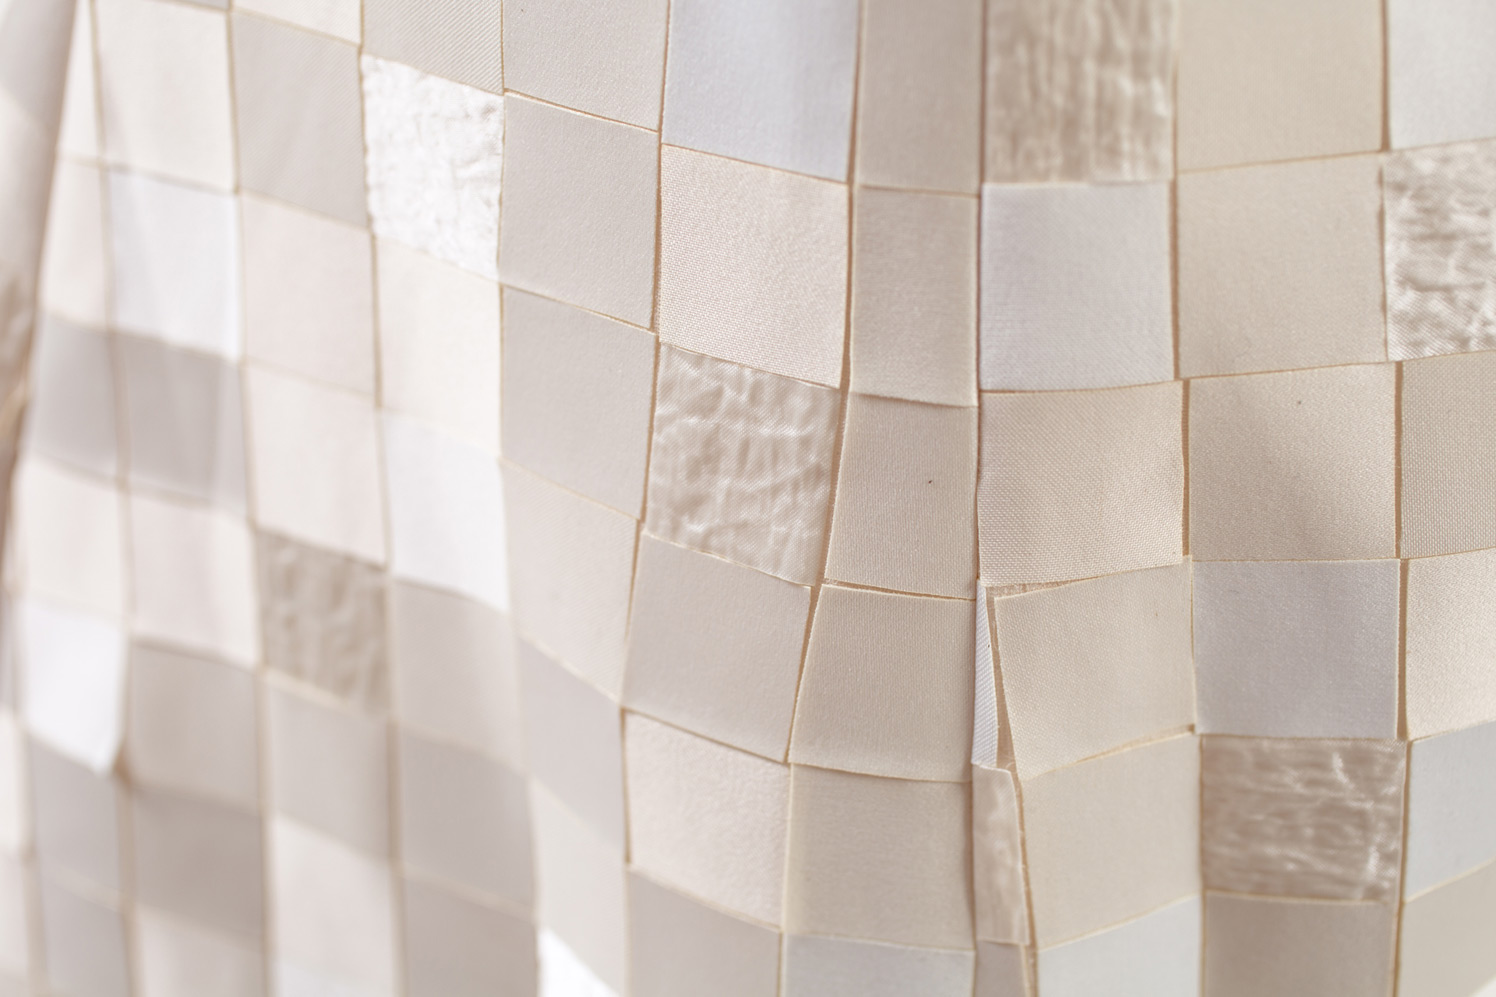 Mosaïque, un abito creato con oltre 3000 quadratini di tessuto, by Matthan Gori.